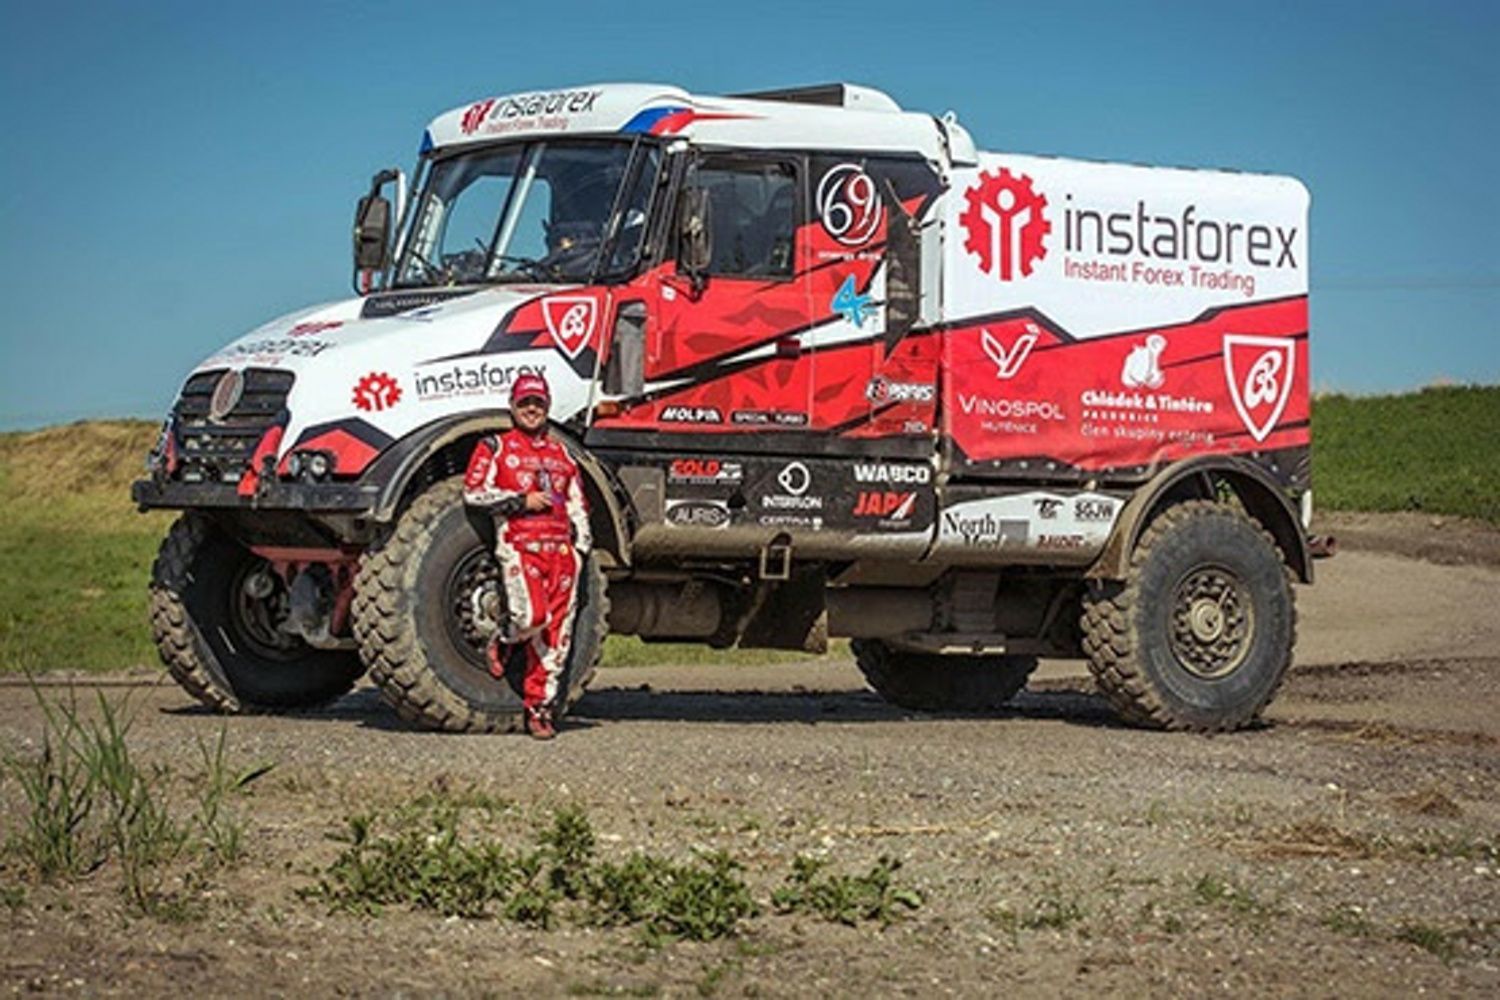 Rallye Dakar 2018: Aleš Loprais, Tatra 815 - Queen 69